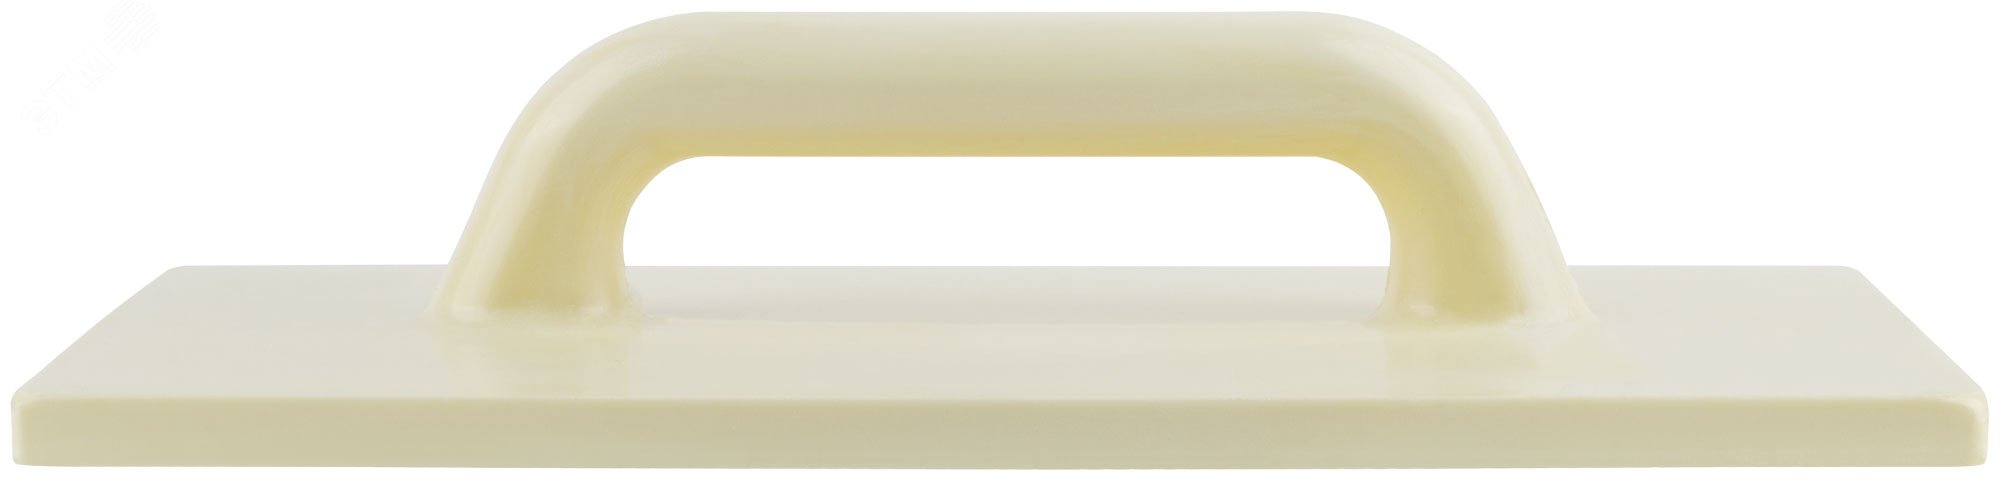 Терка полиуретановая желтая Профи 220х420 мм 5619 РОС - превью 3